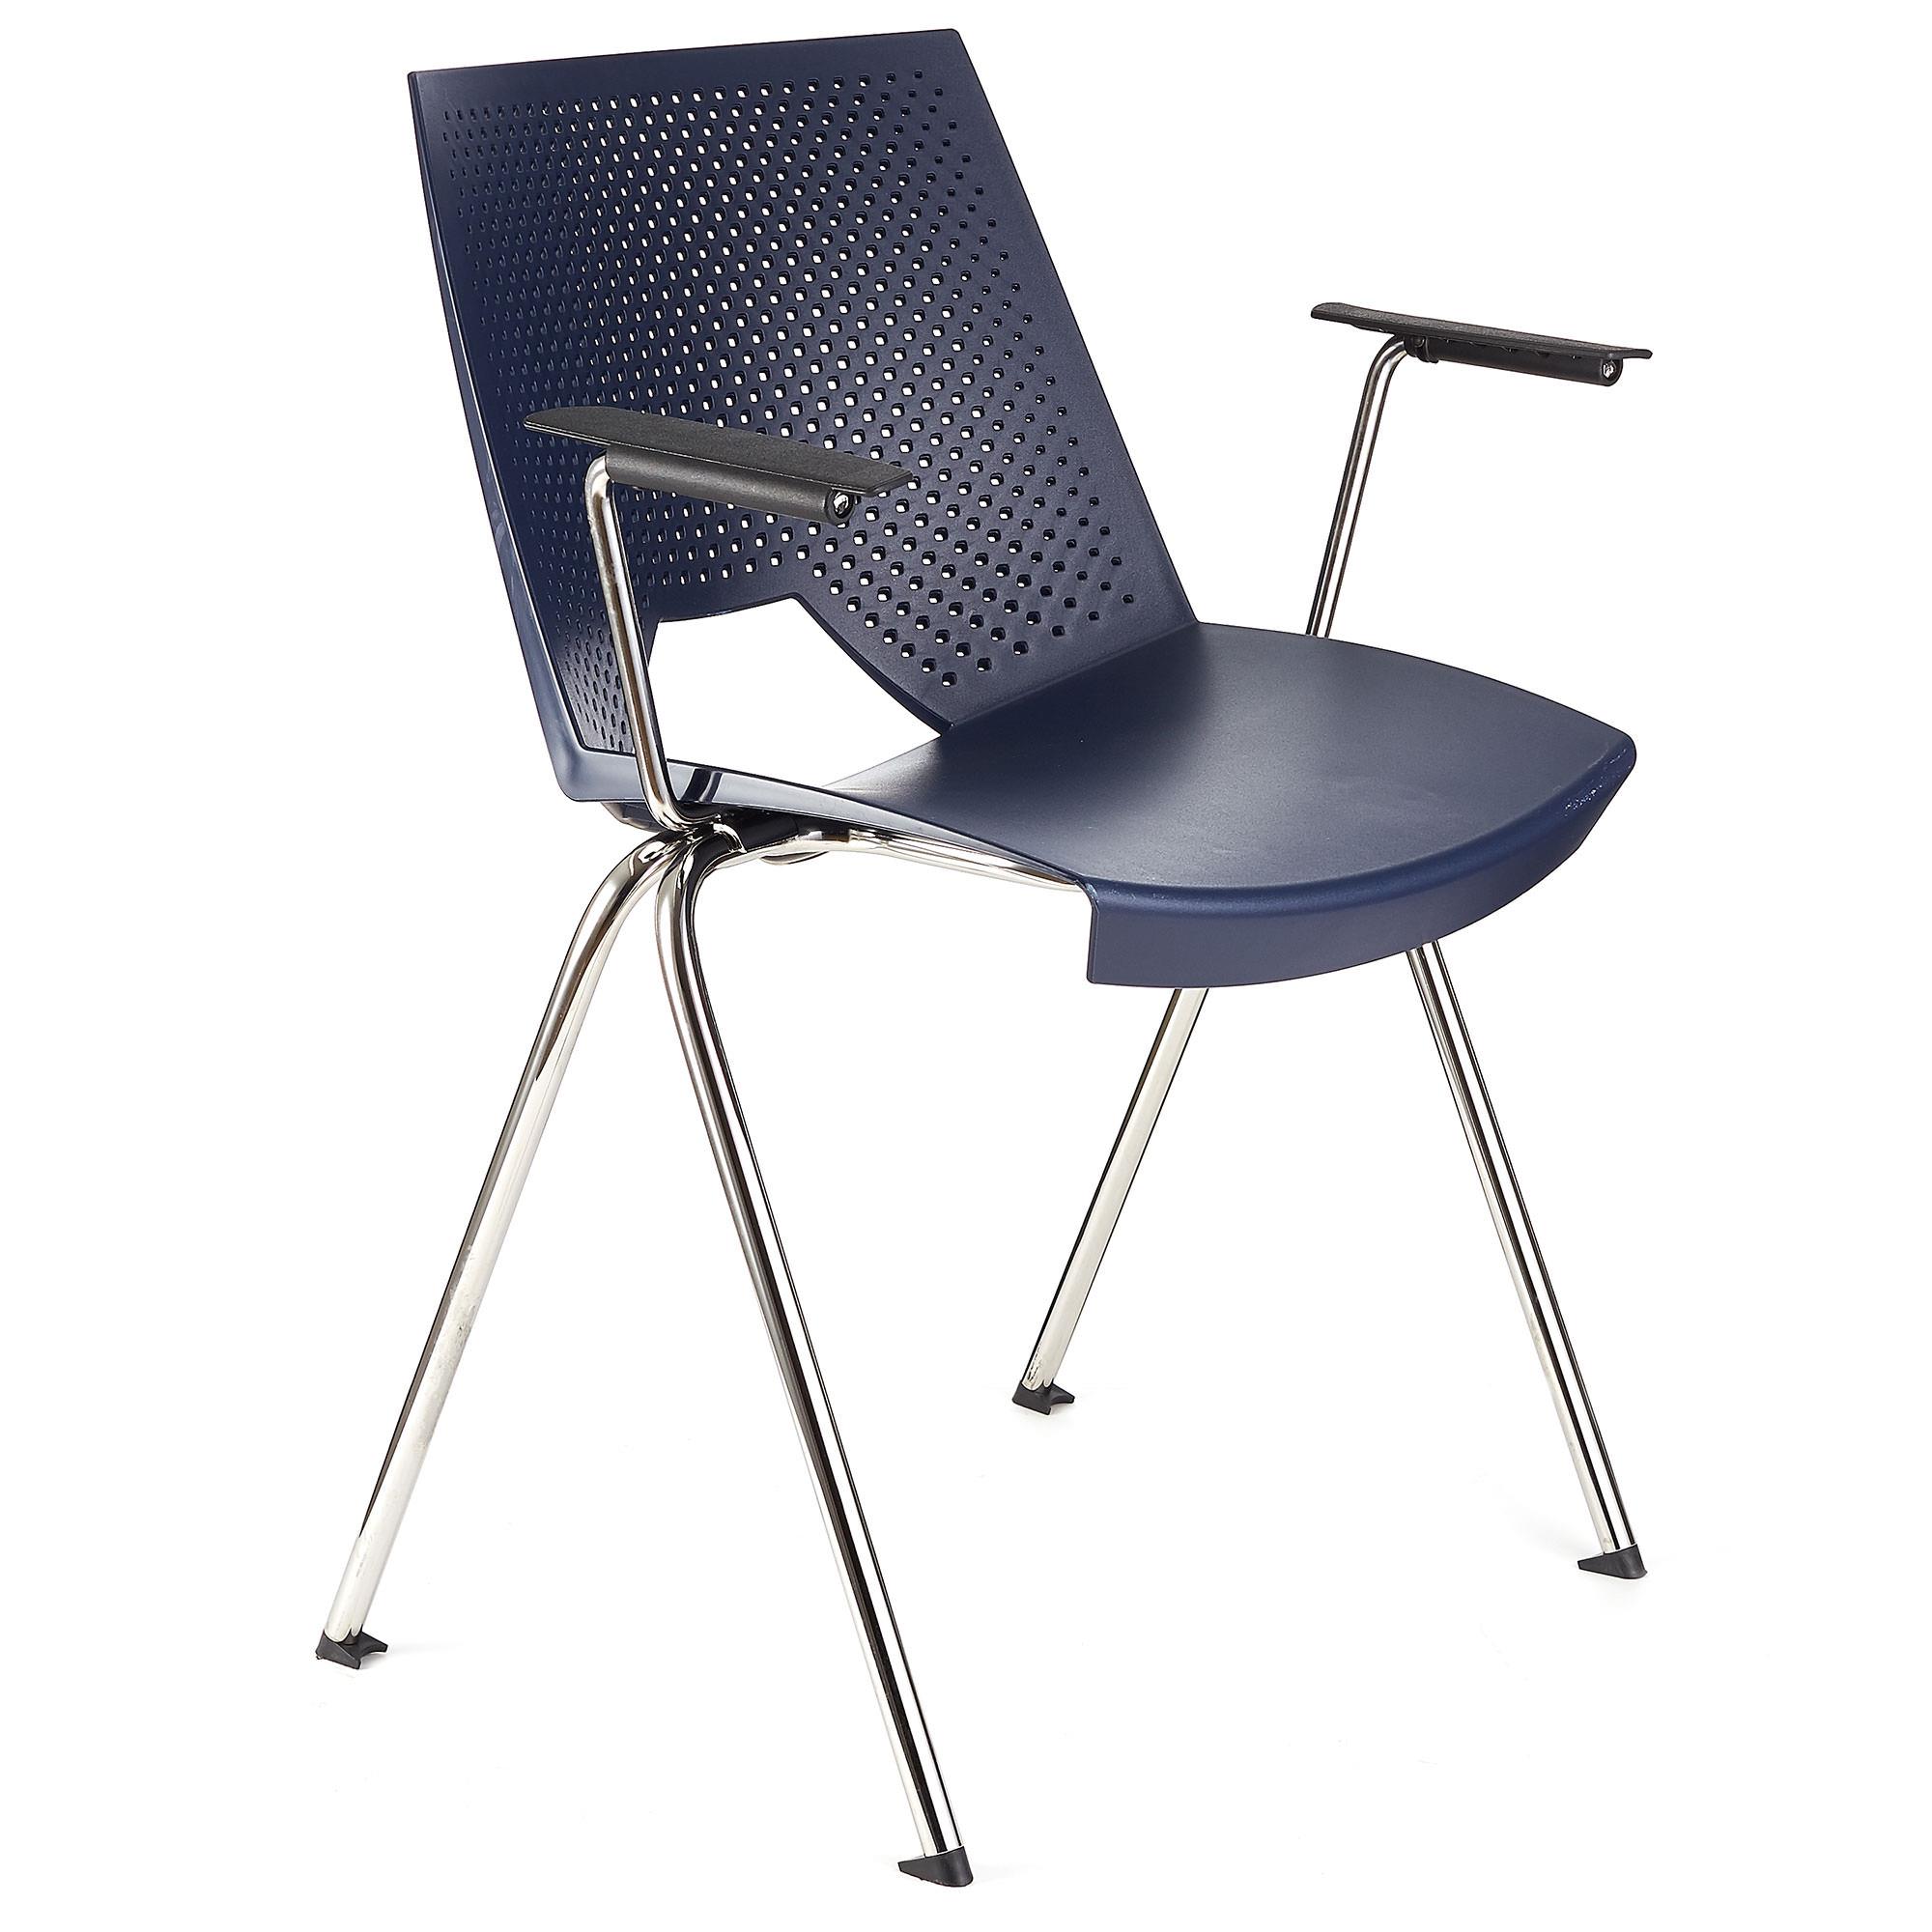 Cadeira de Visita ENZO COM BRAÇOS, Confortável e Prática, Empilhável, Cor Azul